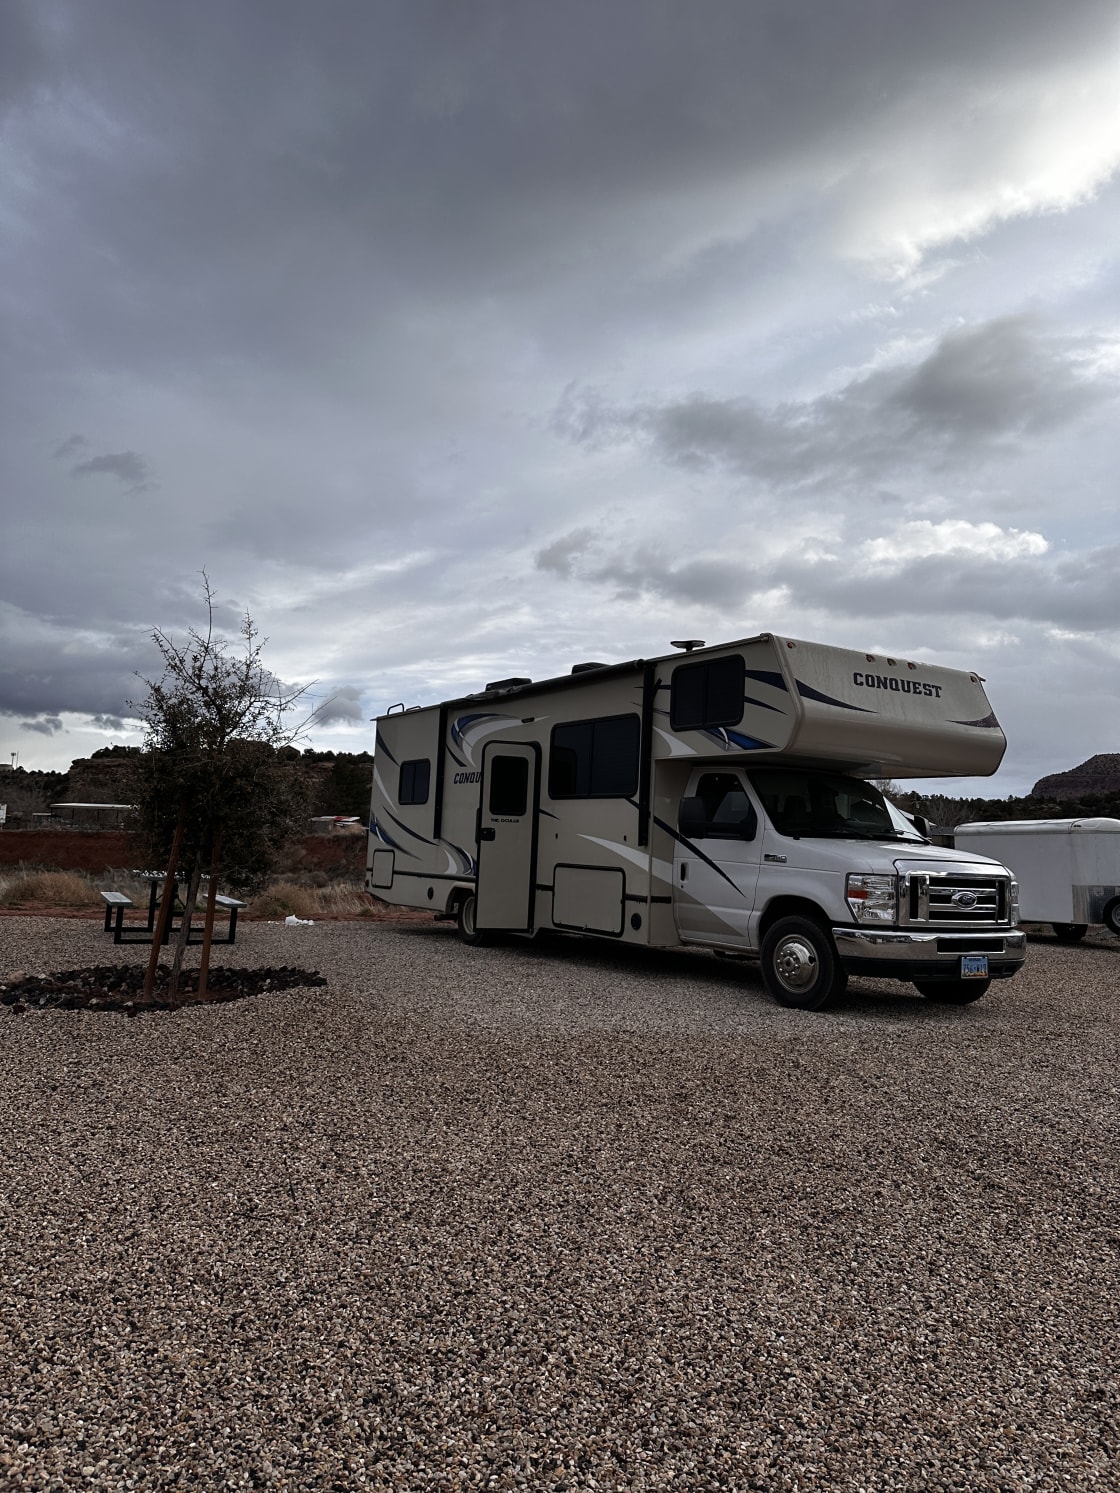 Range RV Campground